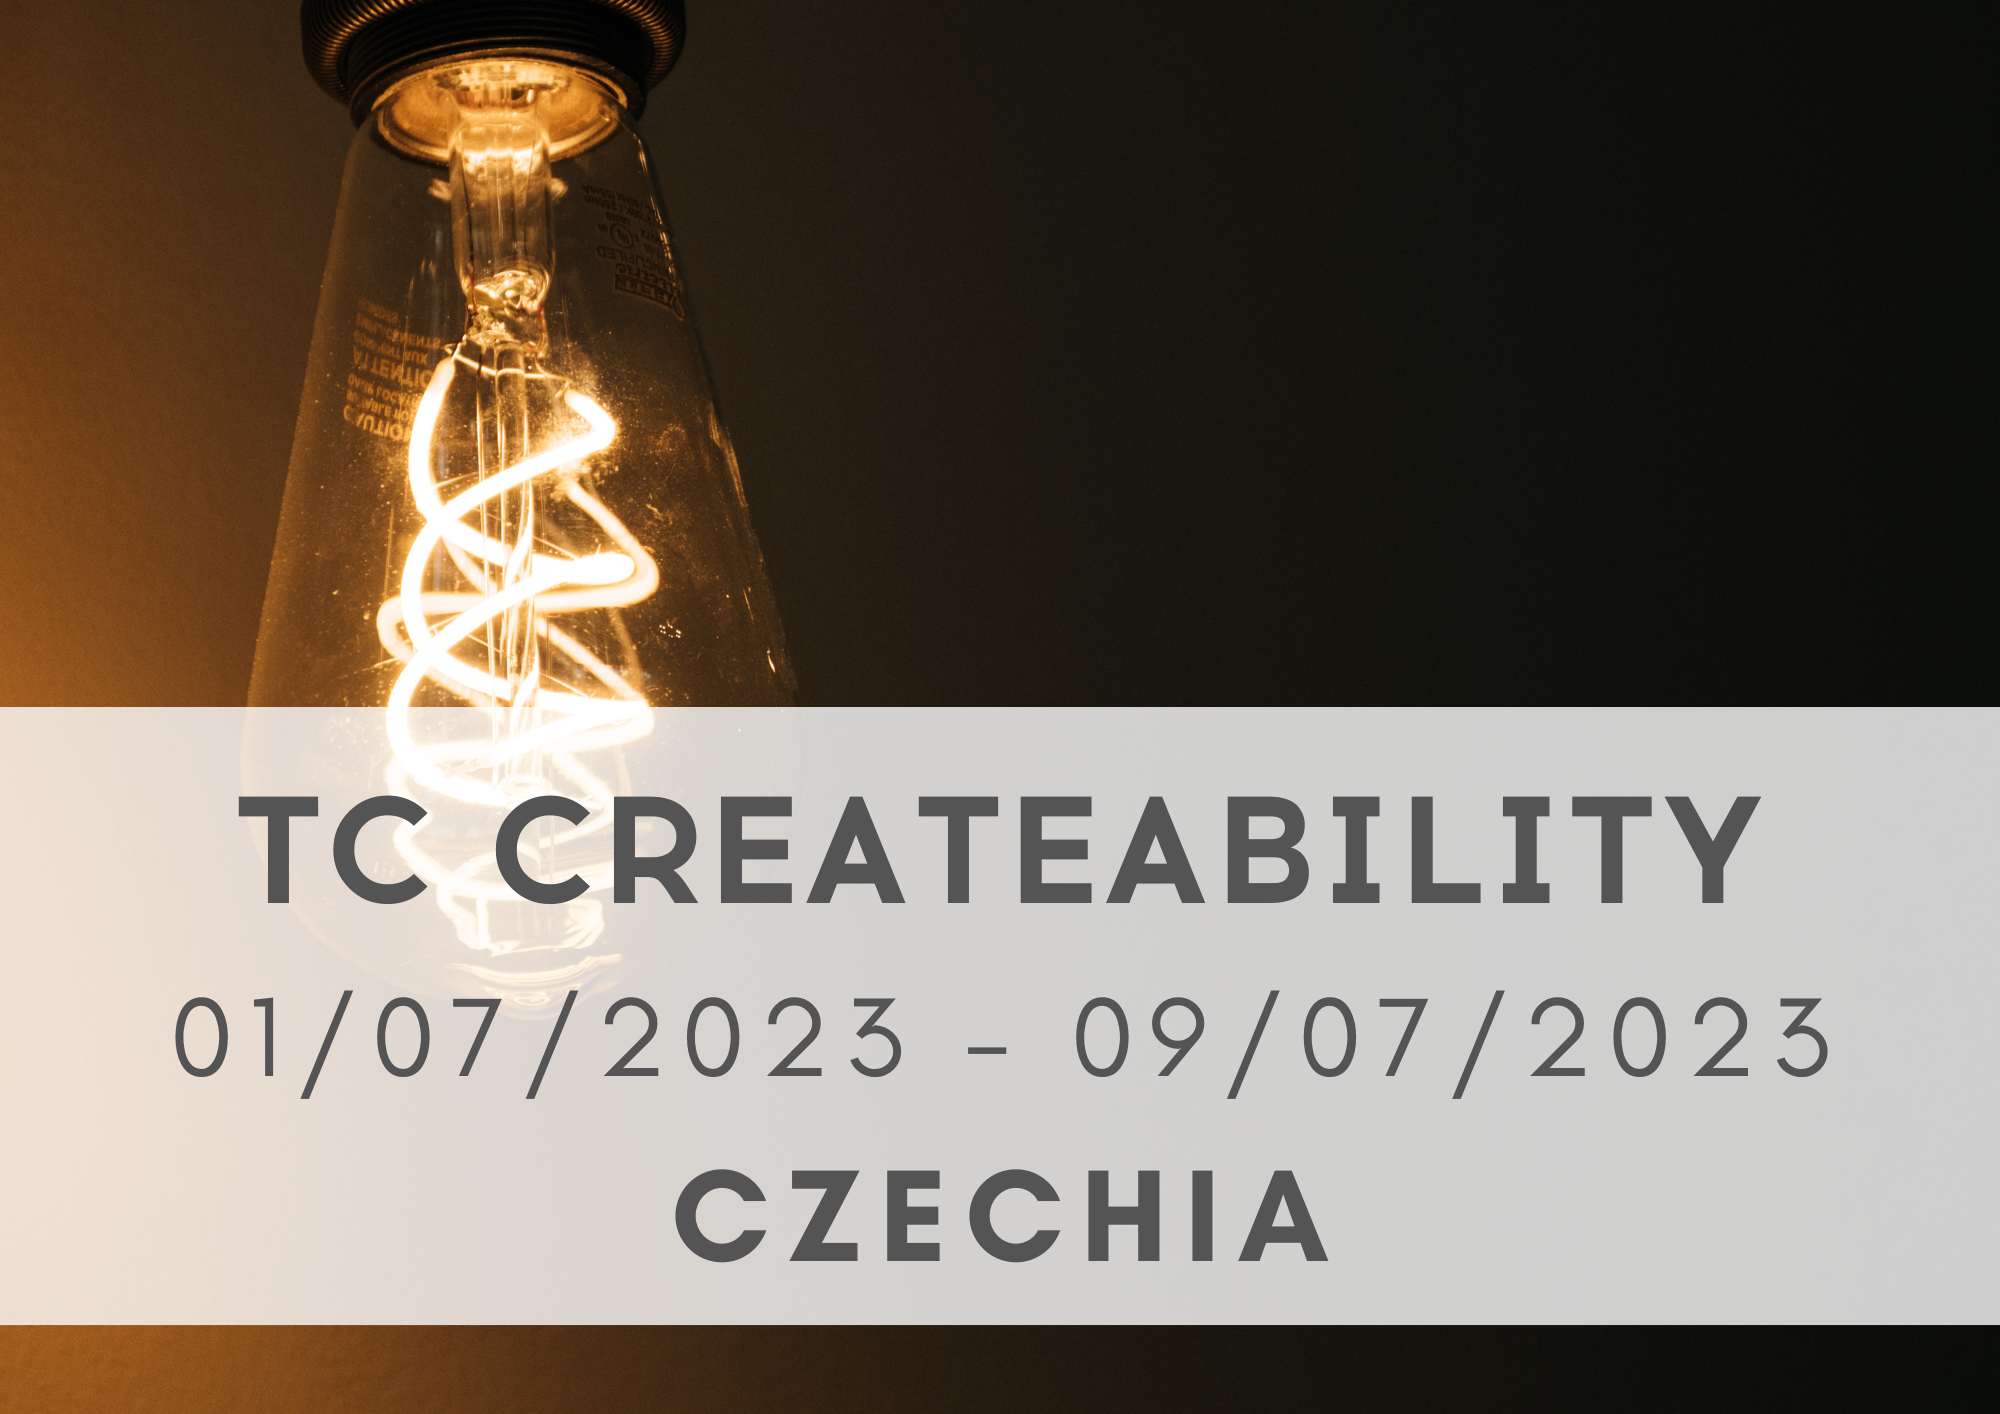 TC CreateAbility, 01-09/07/2023, Czechia